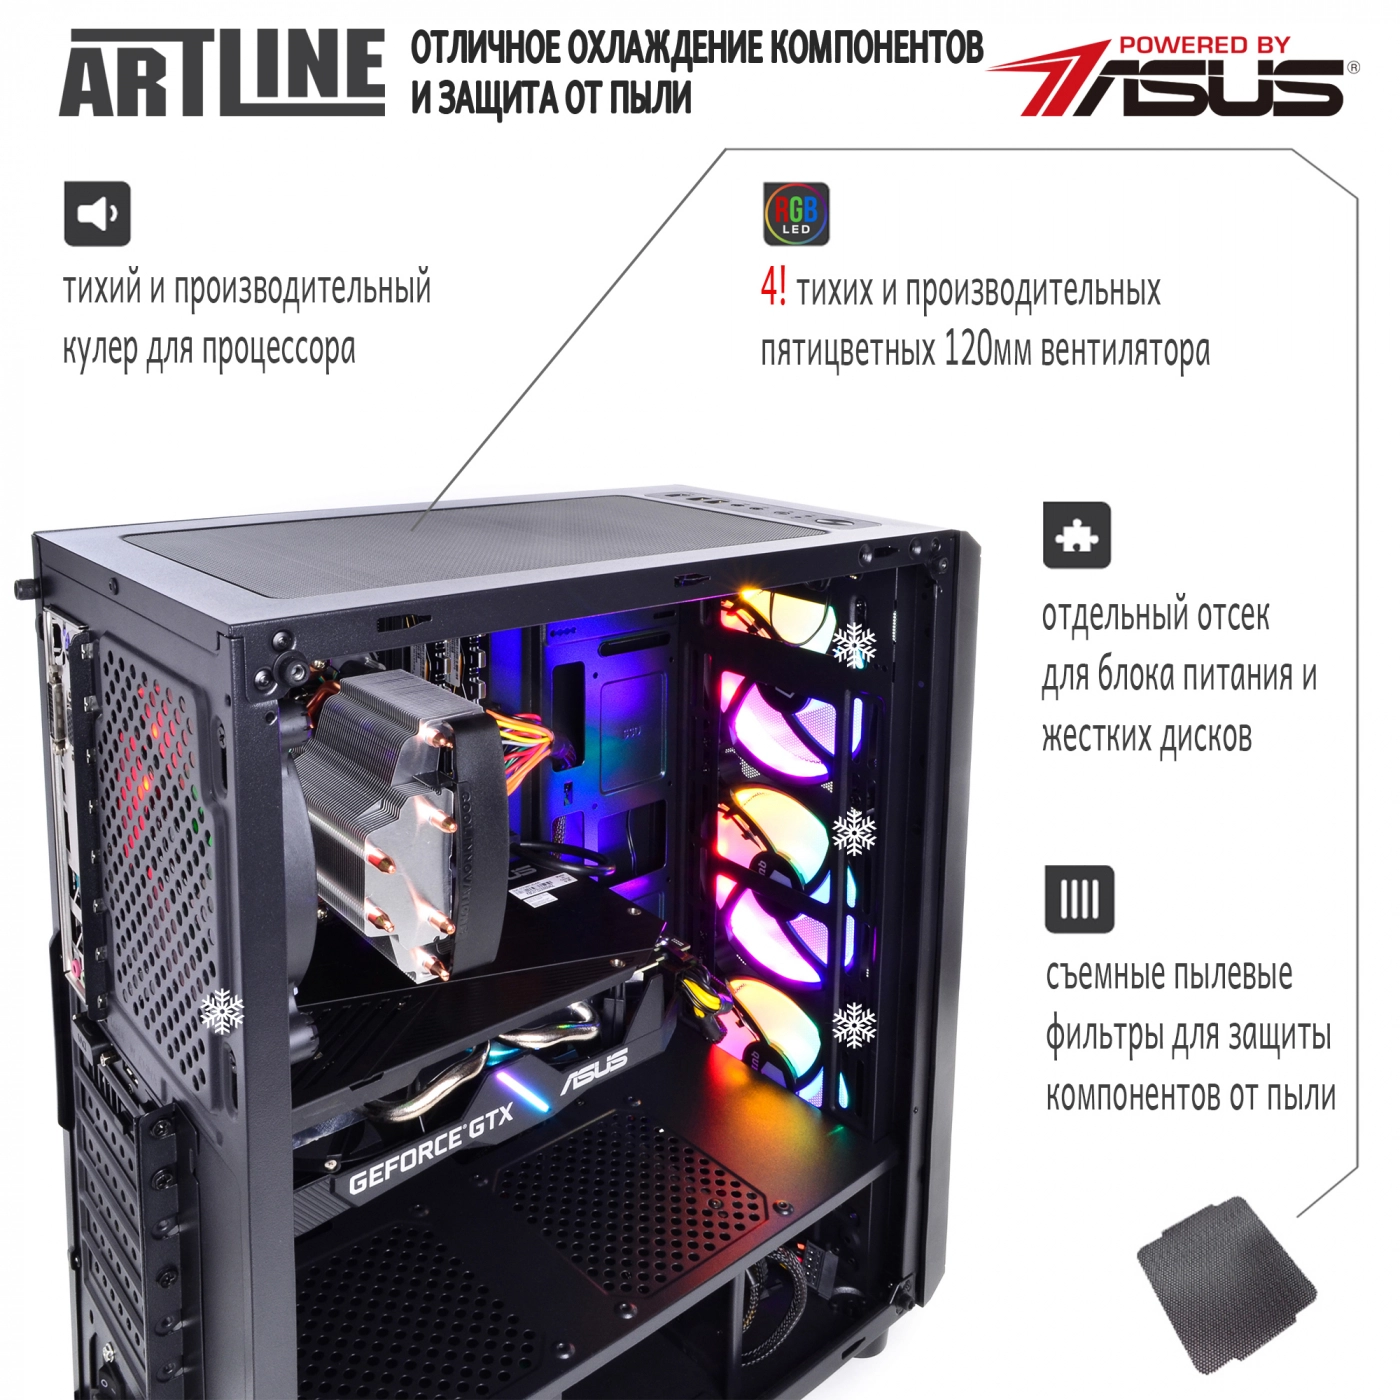 Купить Компьютер ARTLINE Gaming X68v07 - фото 3